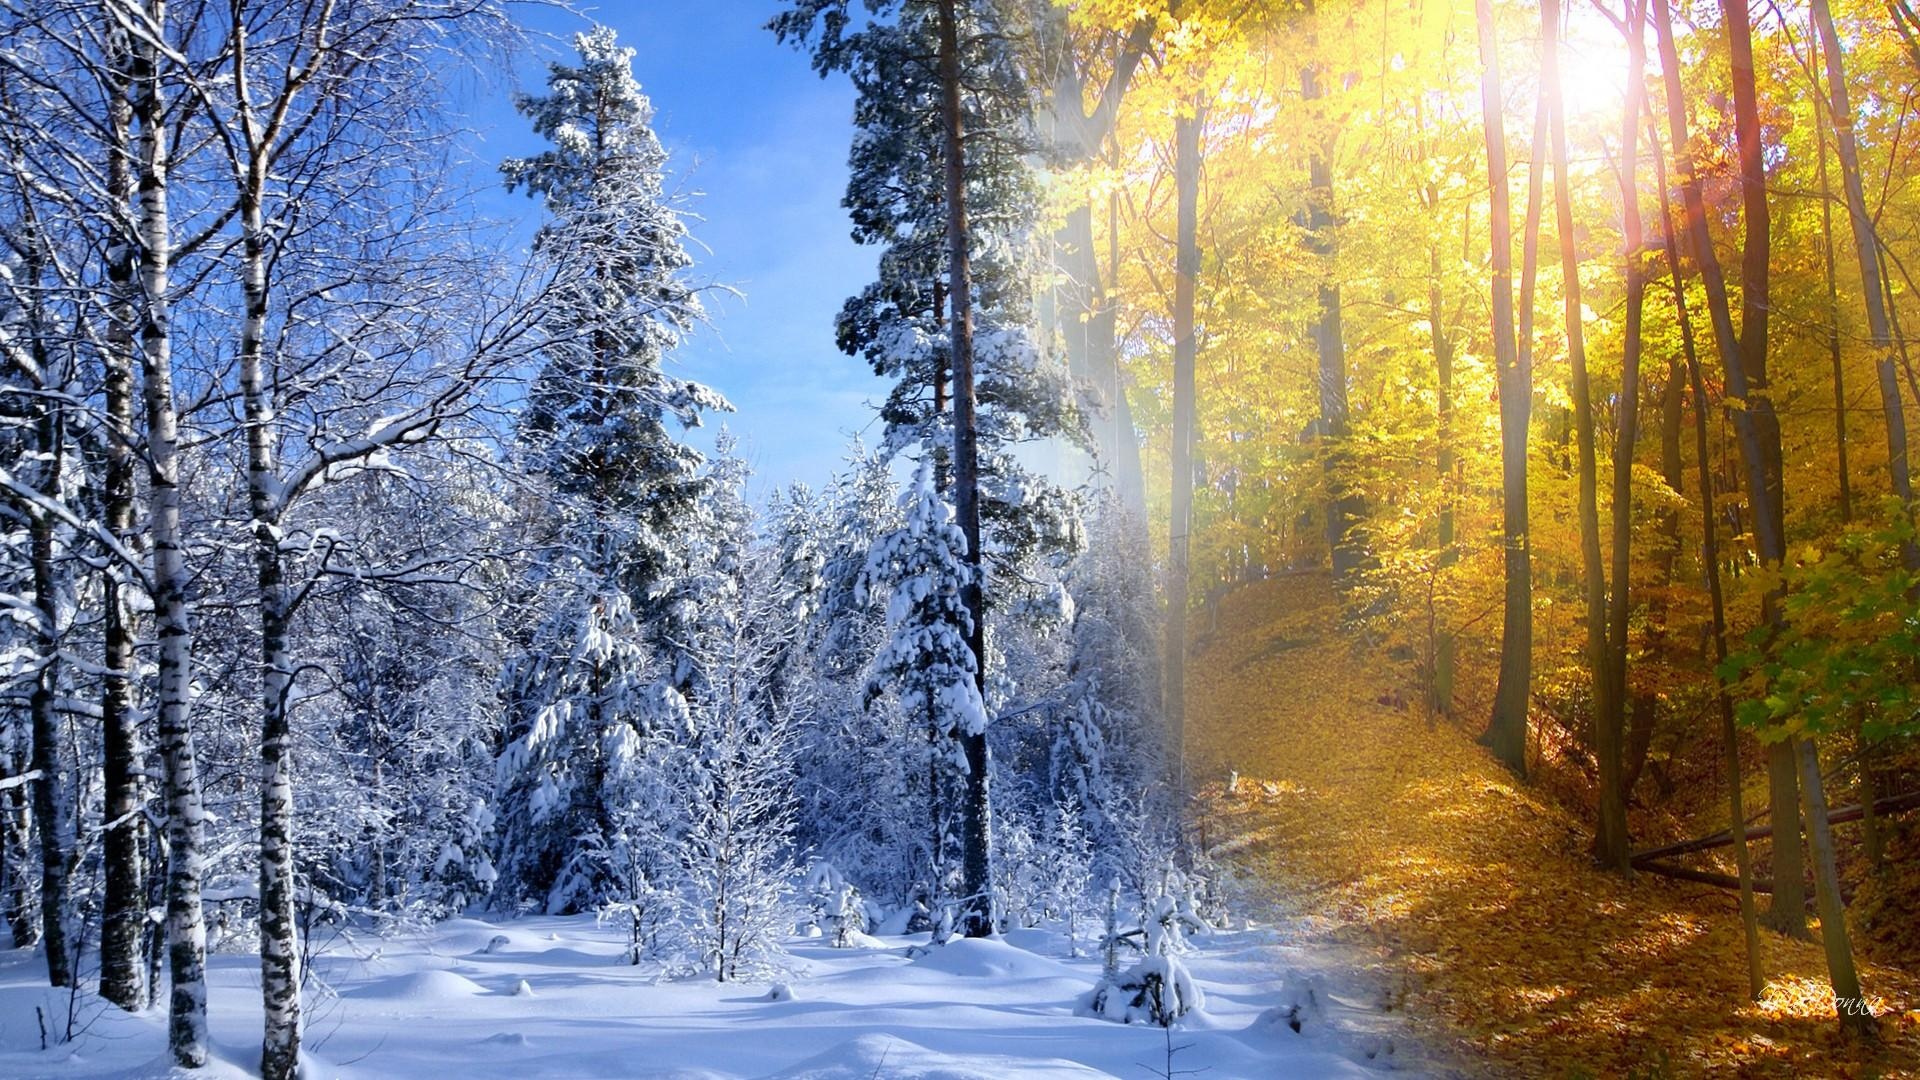 秋冬壁纸1600x900分辨率下载,秋冬壁纸,高清图片,壁纸,自然风景